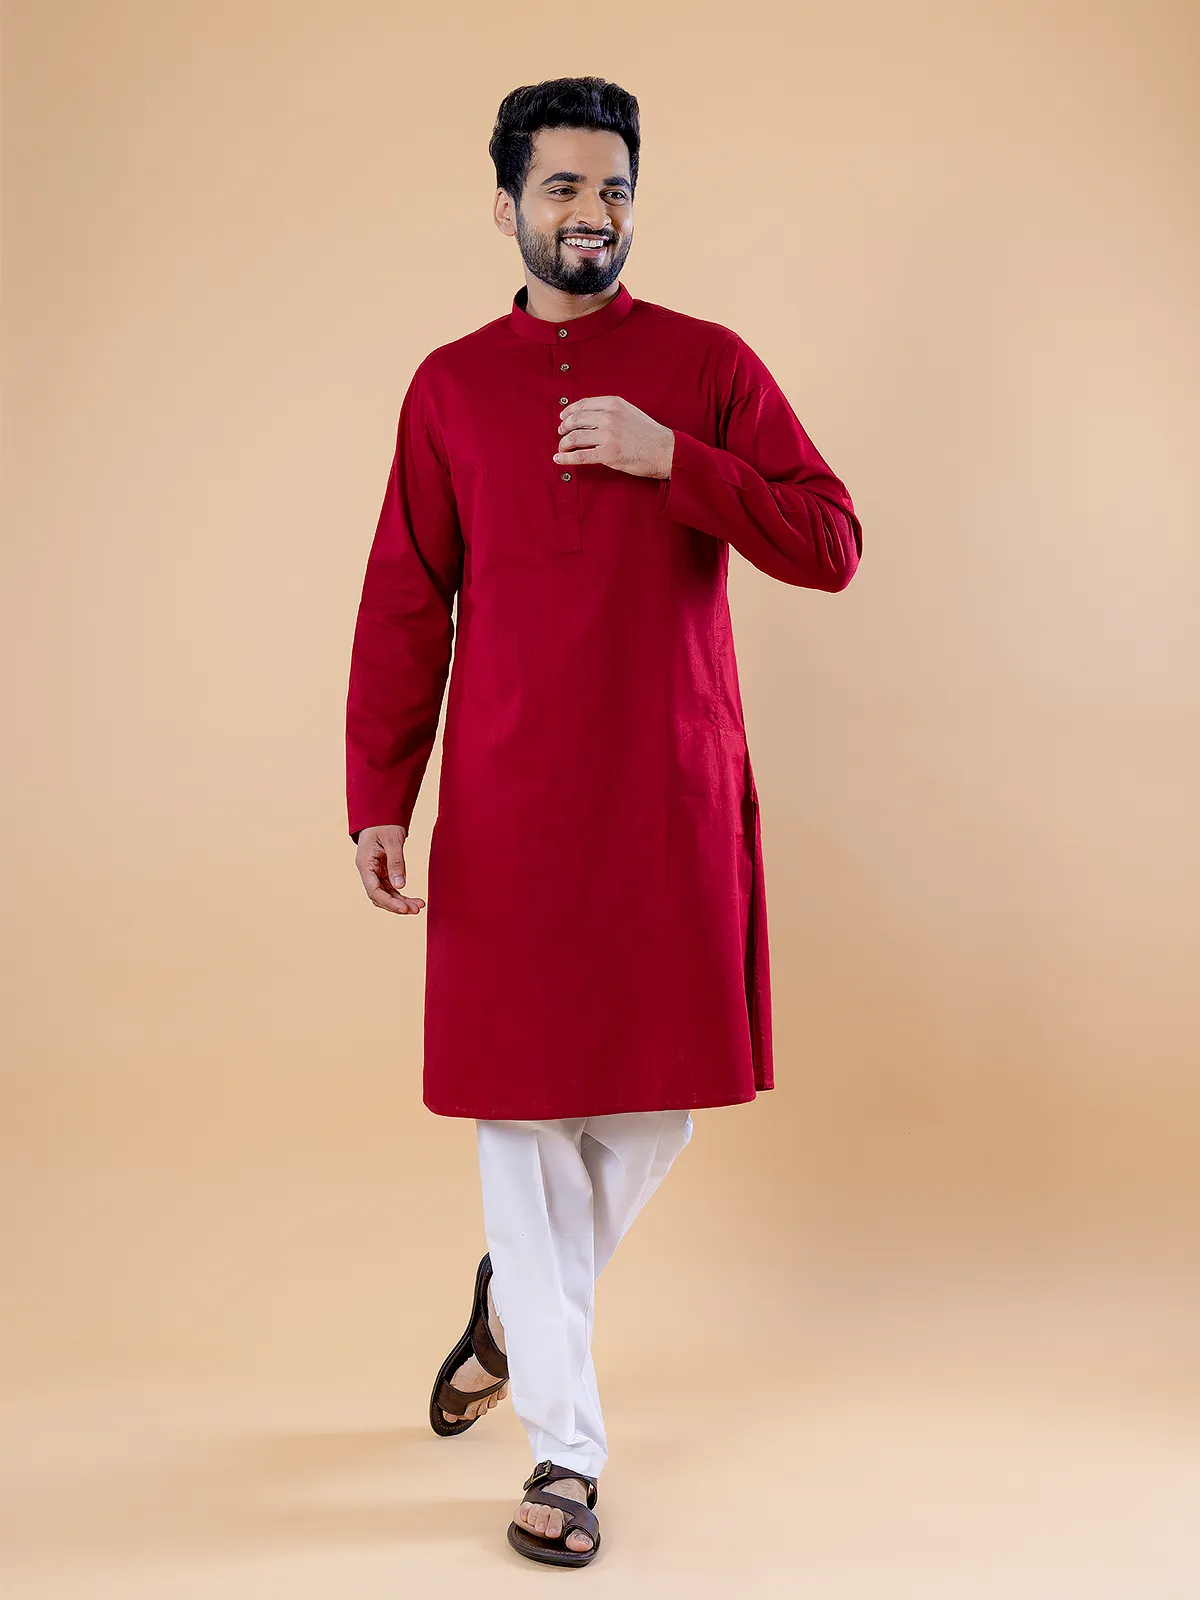 Red plain cotton kurta suit for festive